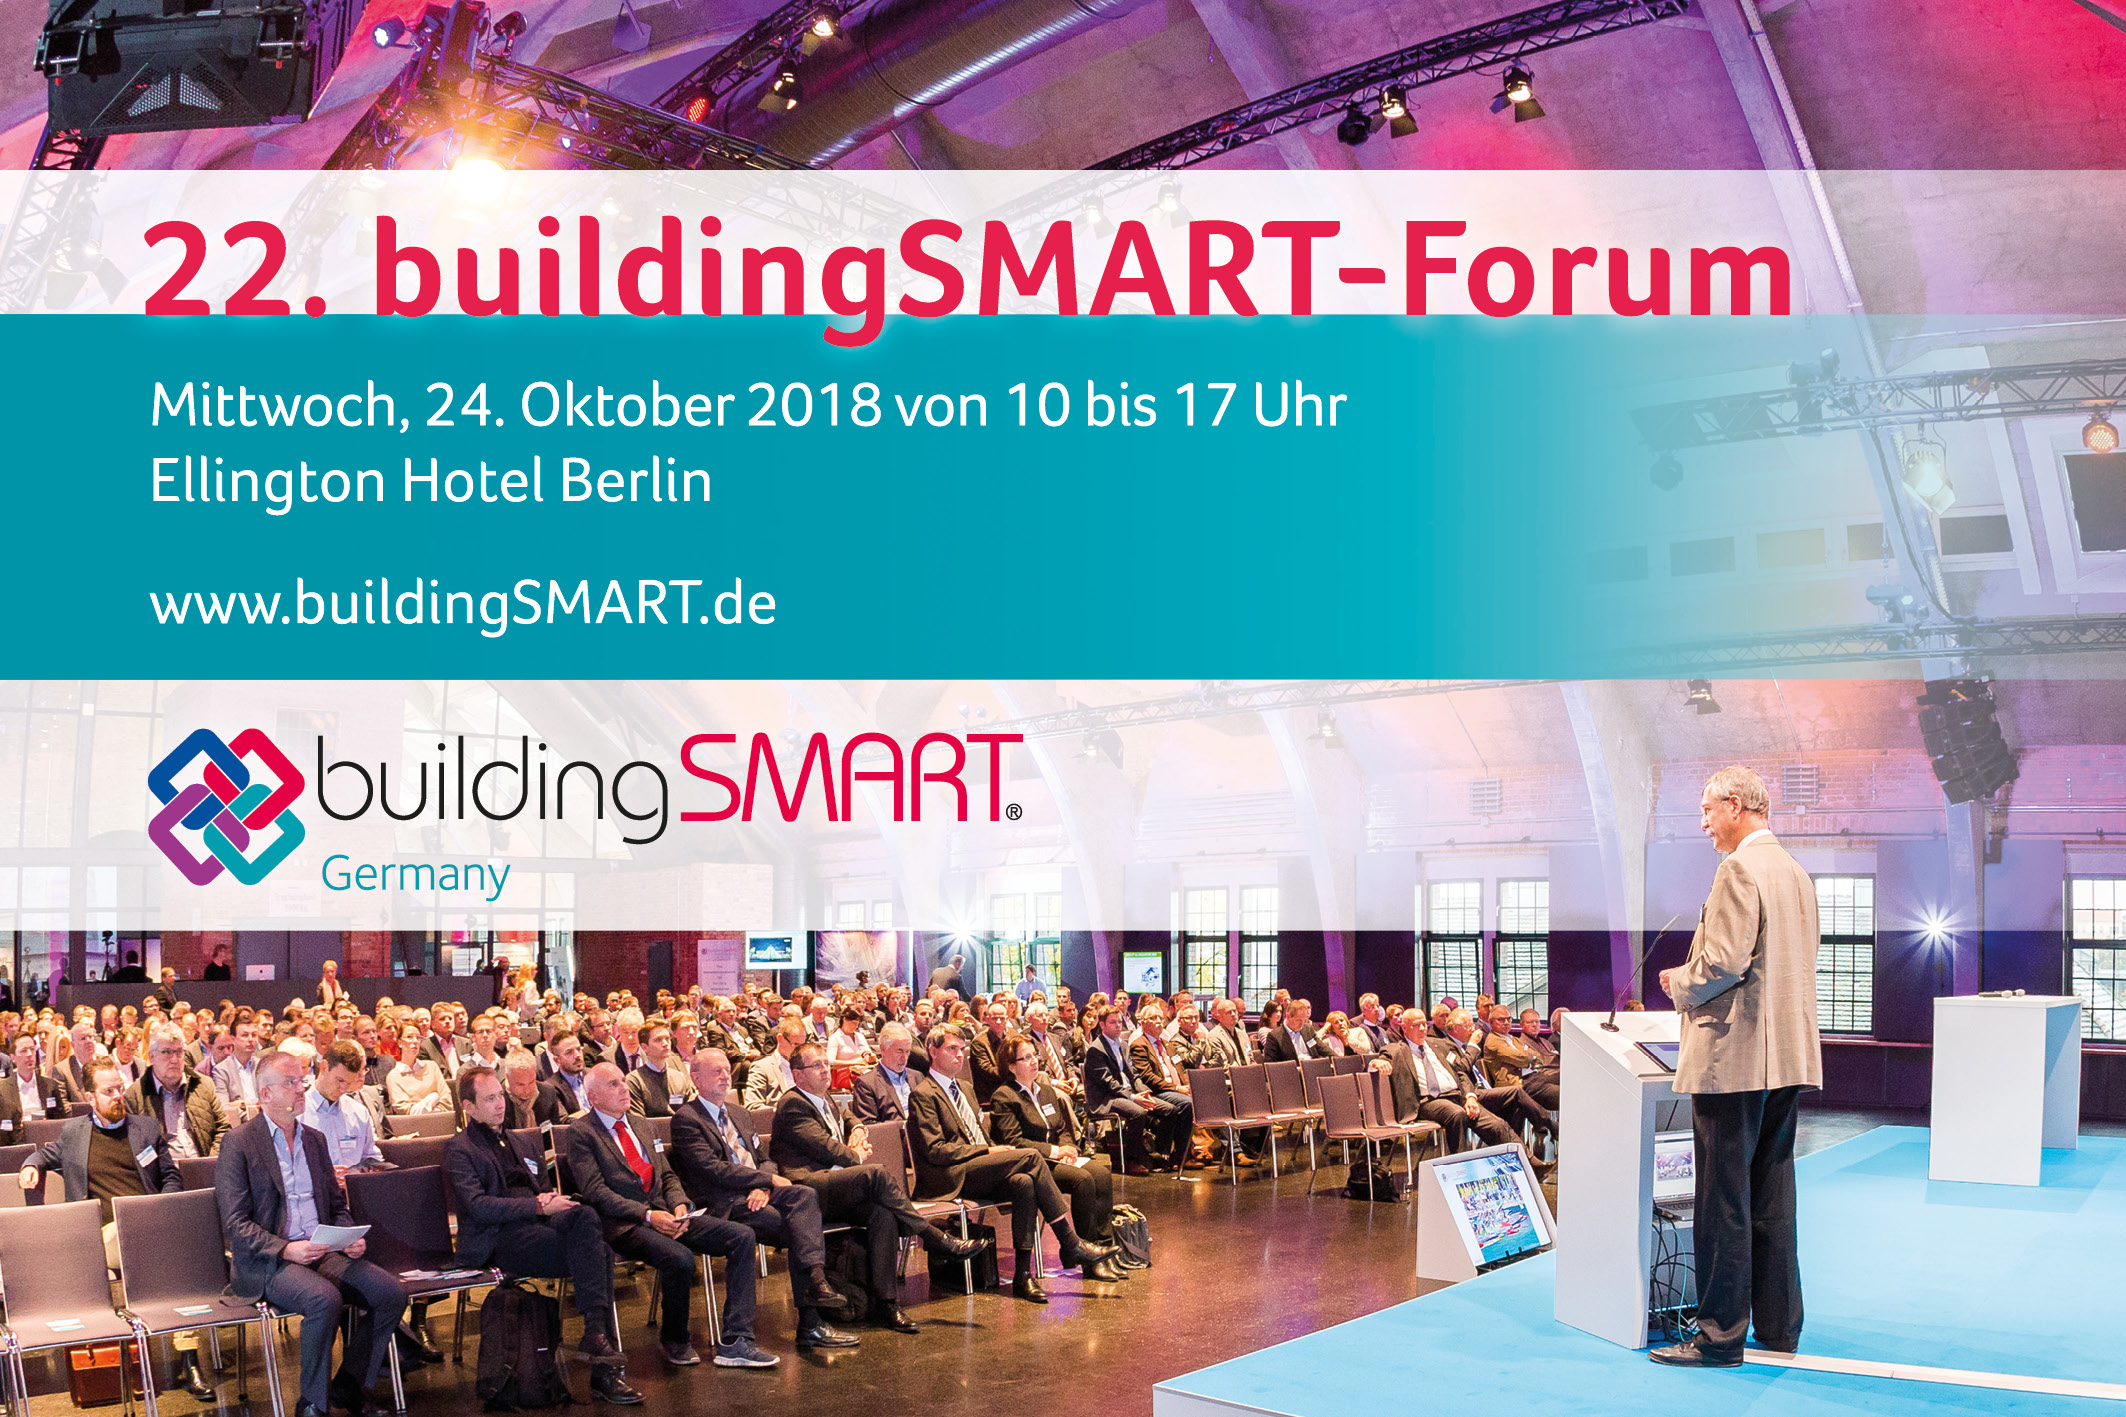 Digitalen Wandel mitgestalten – 22. buildingSMART-Forum in Berlin am 23. und 24. Oktober 2018